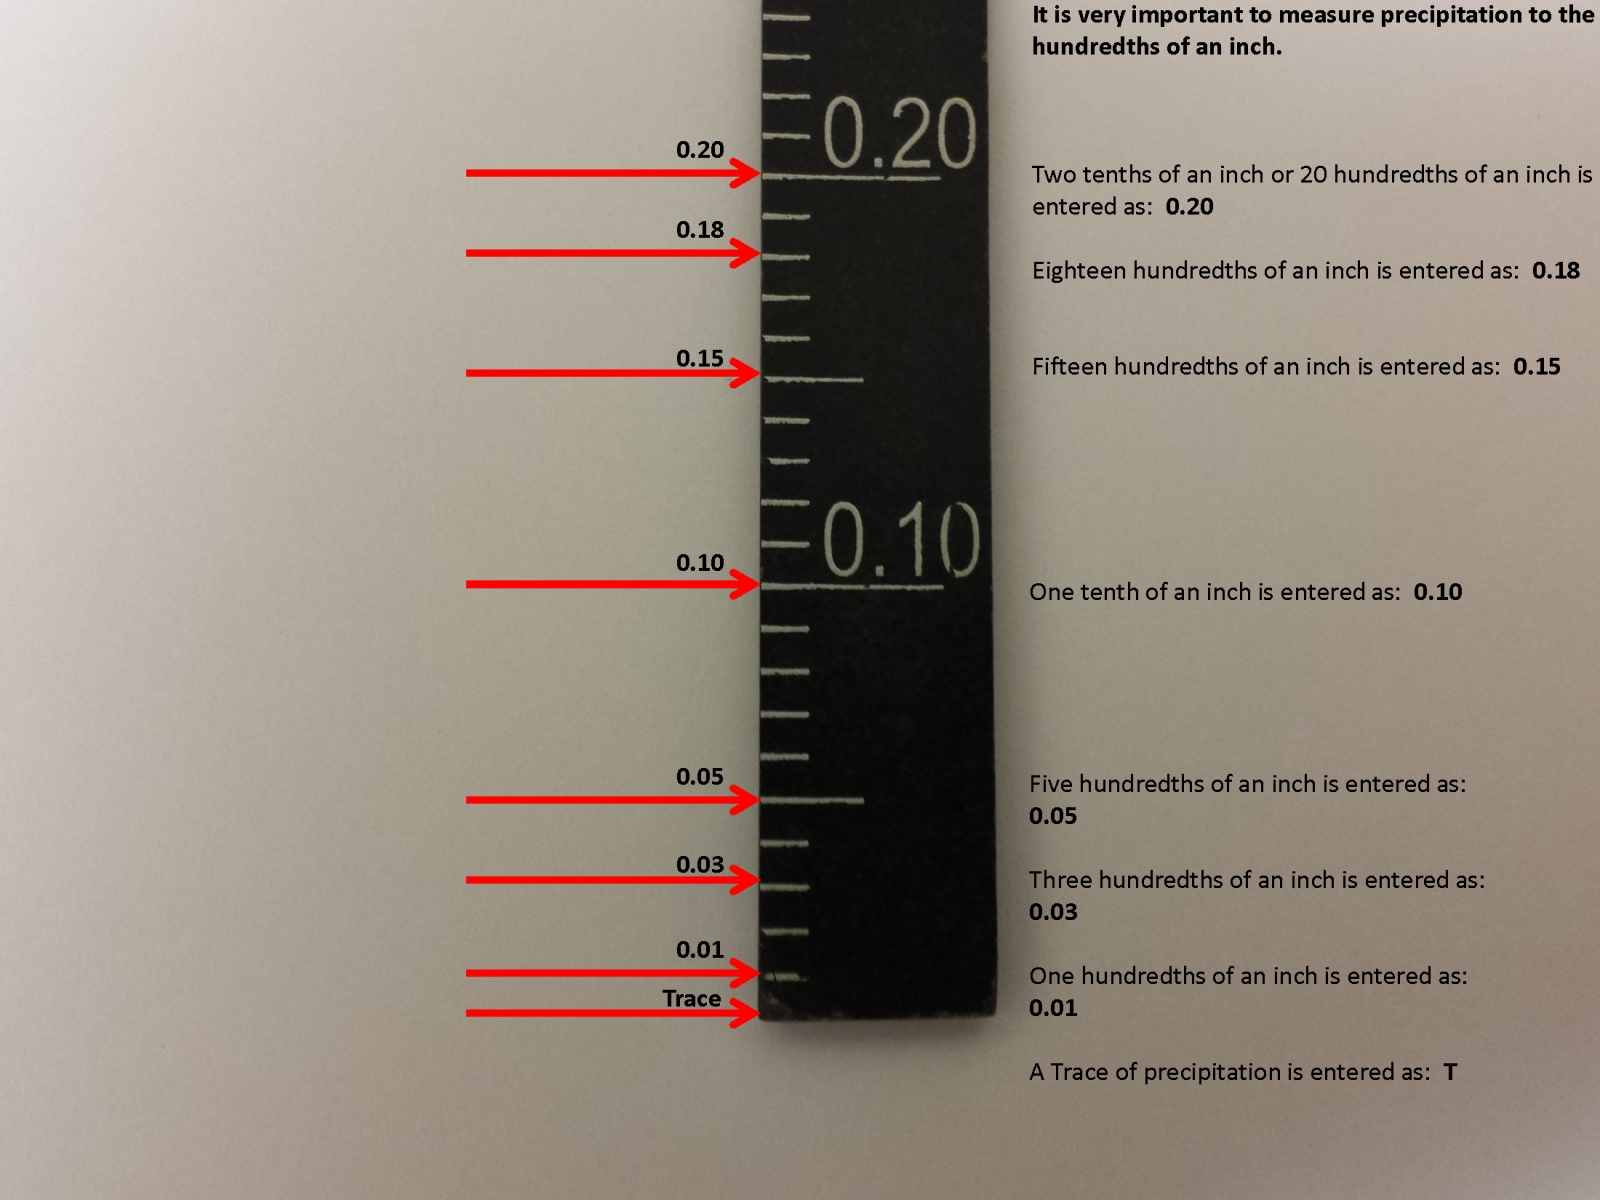 how does a standard rain gauge work